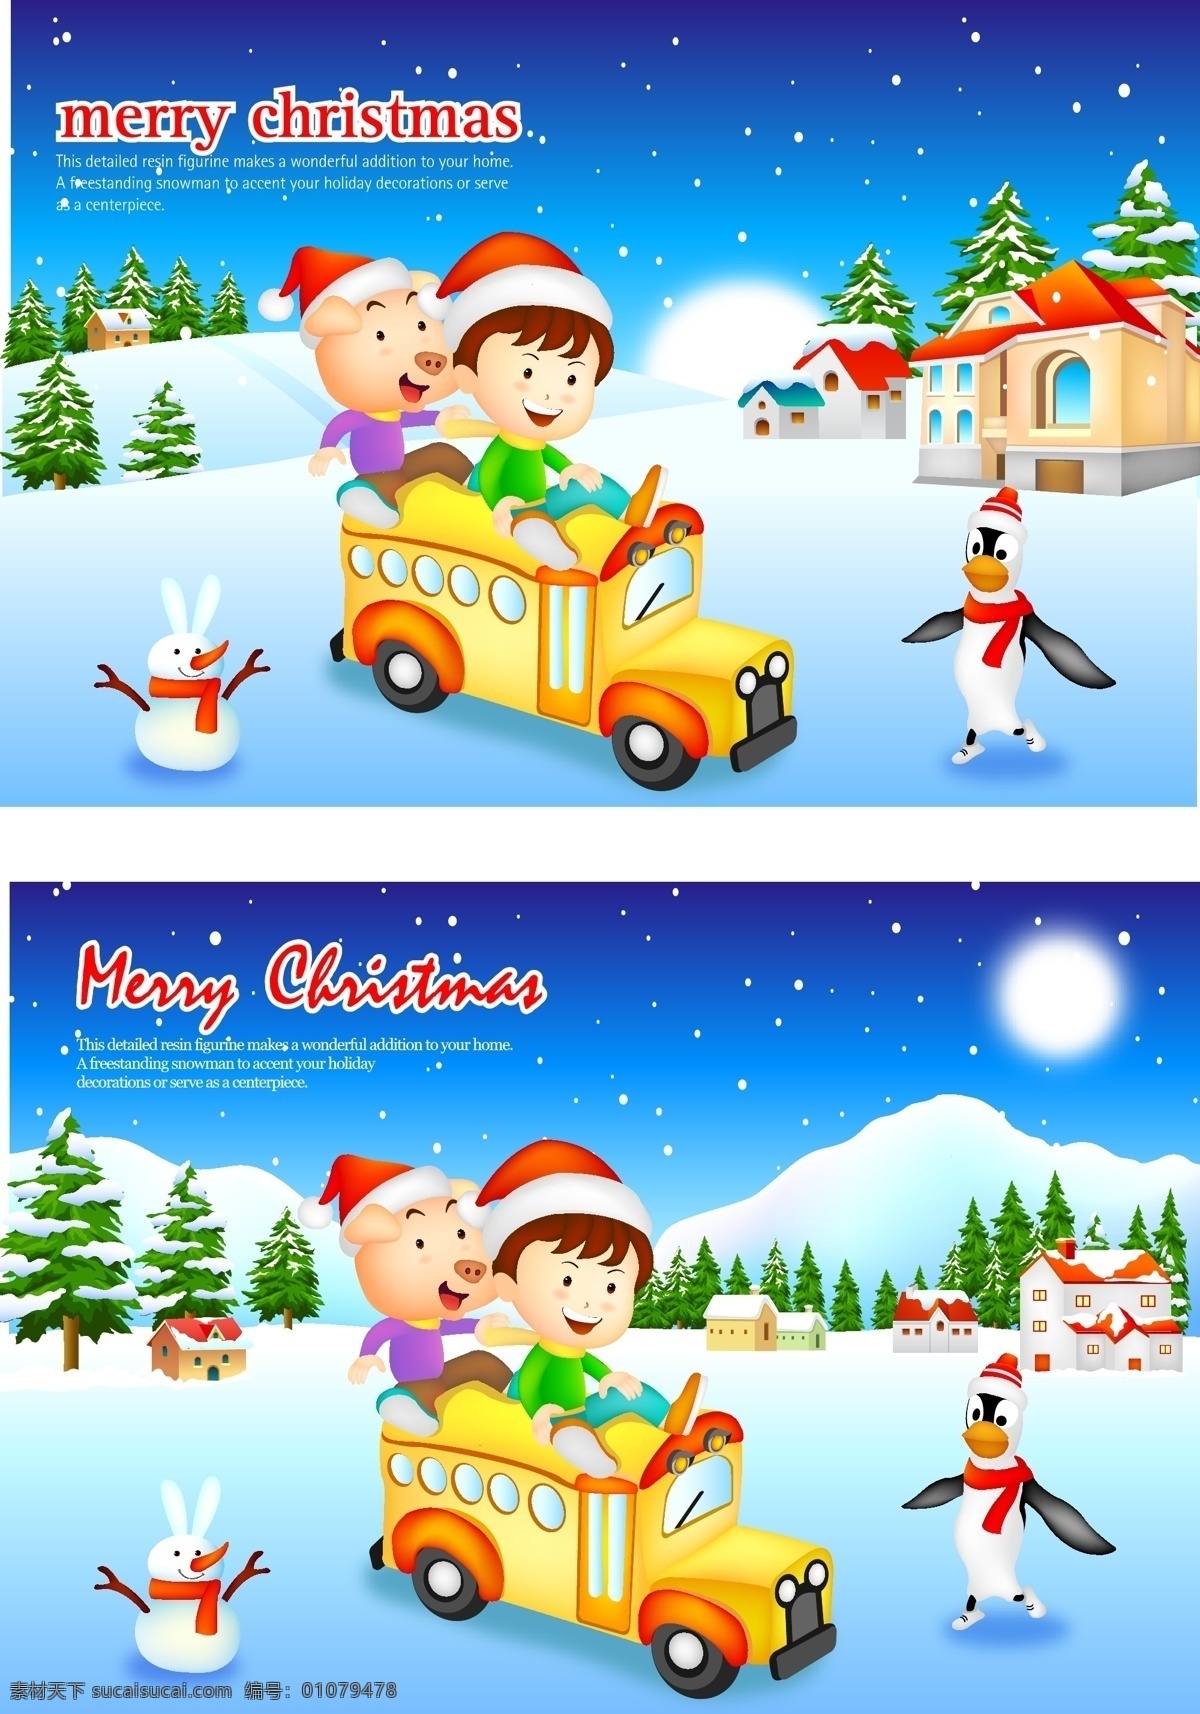 狂欢 圣诞 白雪 车 节日素材 狂欢圣诞 老人 圣诞节 圣诞节日 矢量图库 小孩 其他节日